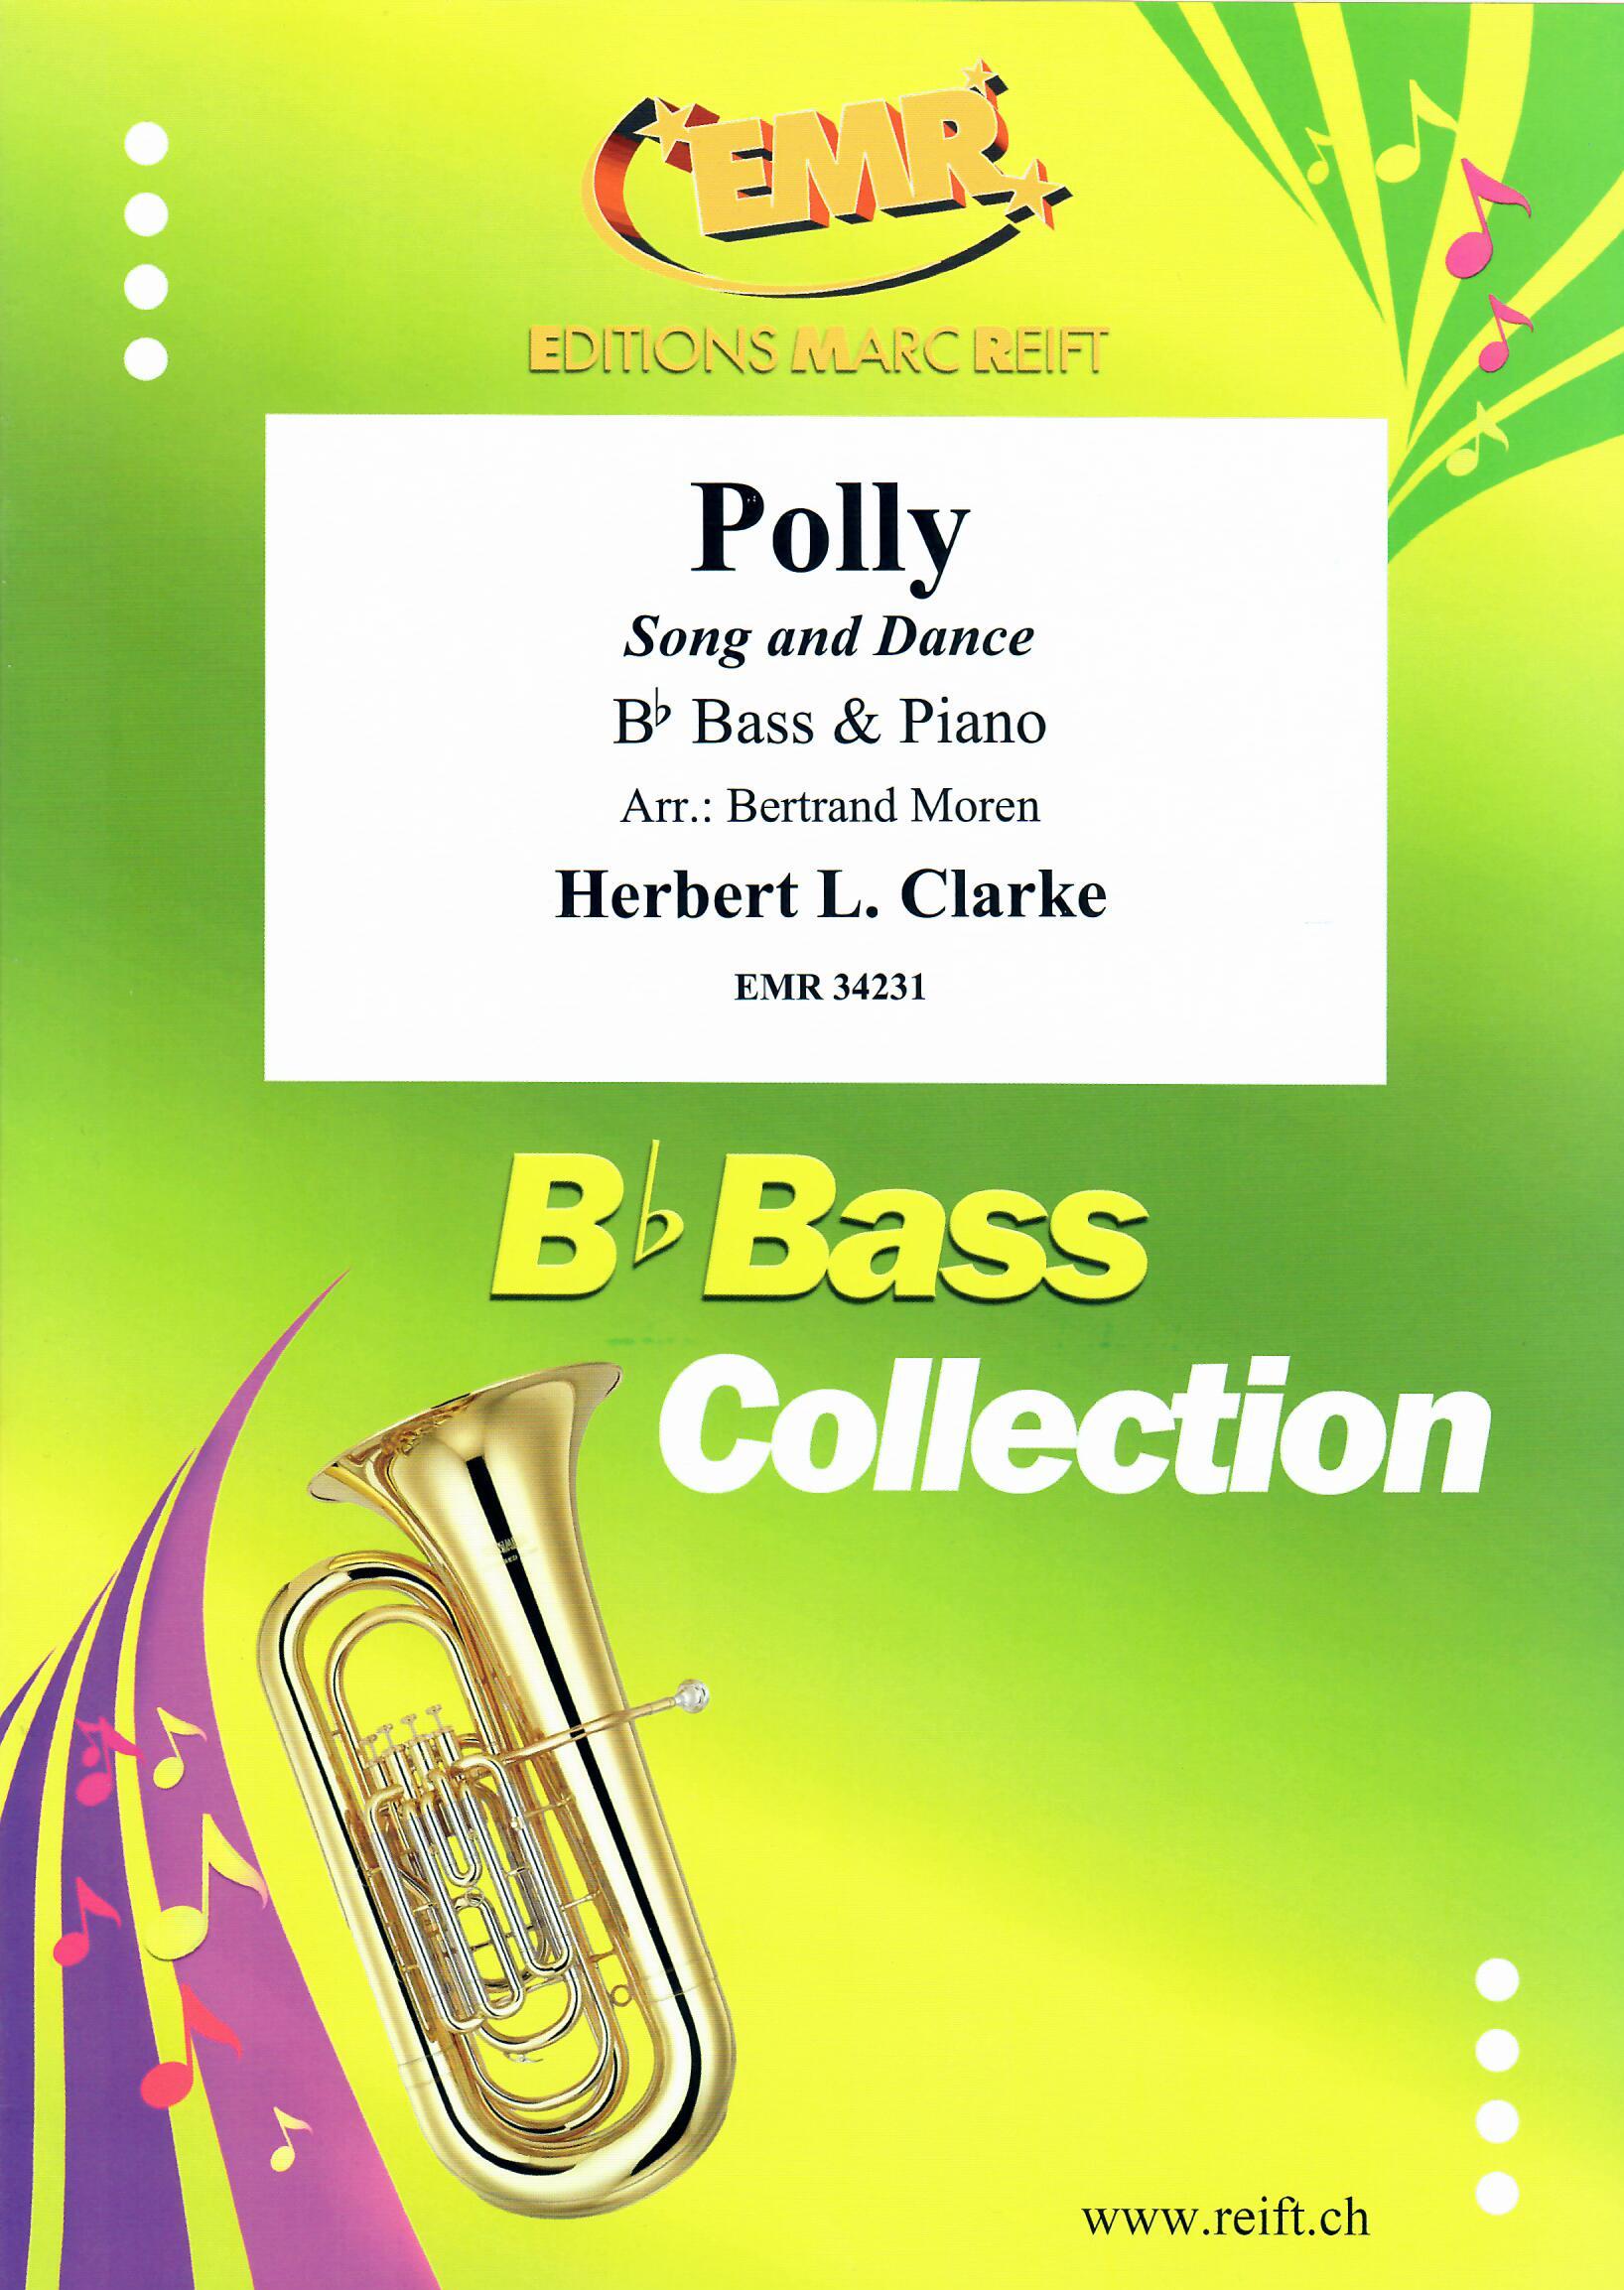 POLLY, SOLOS - E♭. Bass